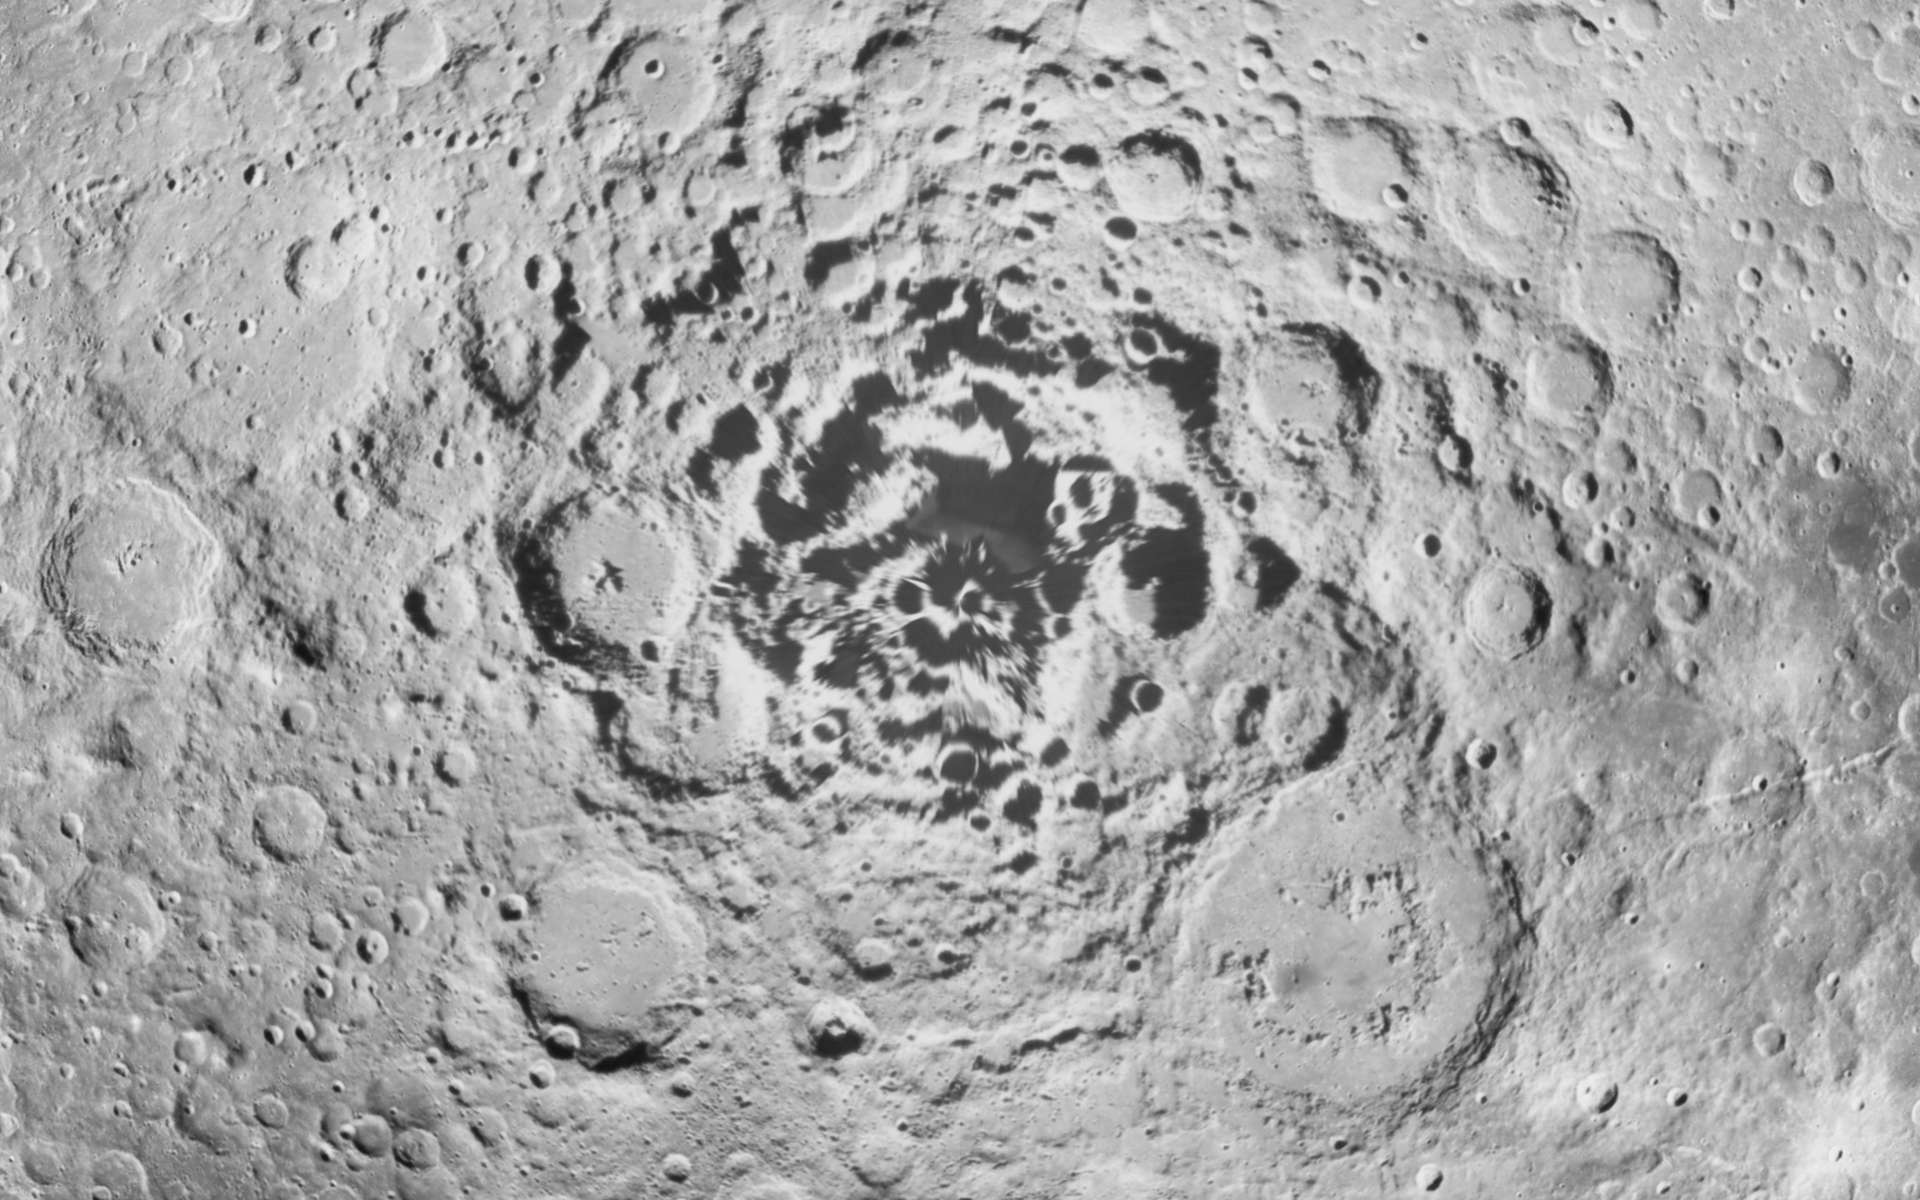 La sonde indienne Chandrayaan-2 est arrivée en orbite autour de la Lune